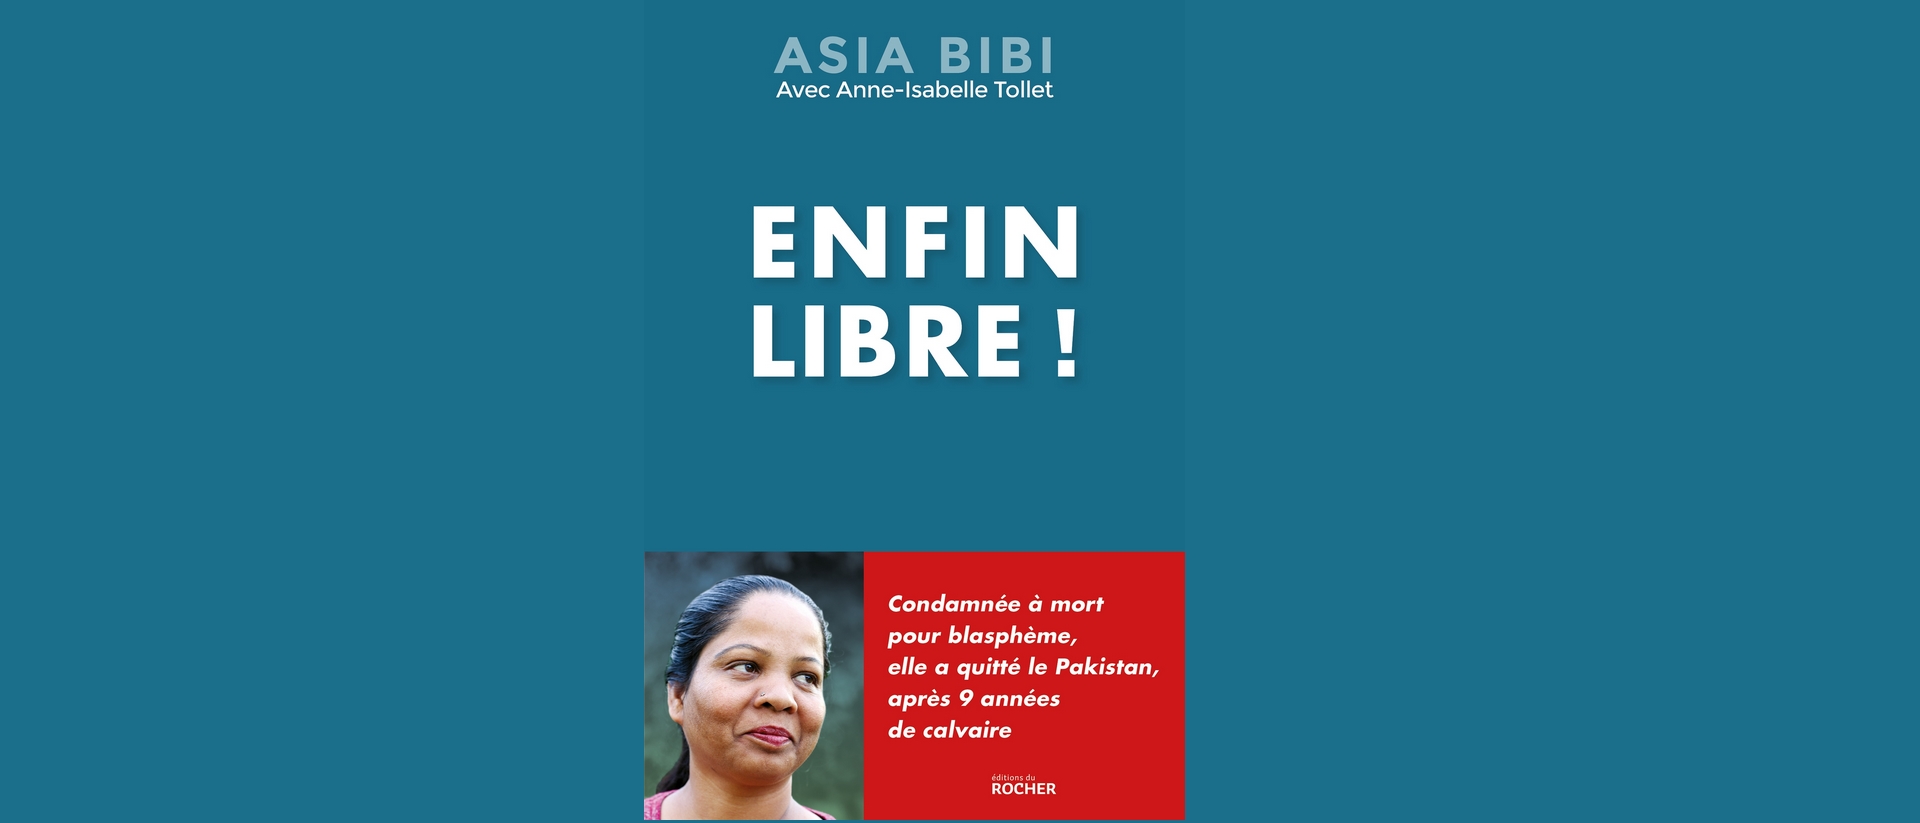 La chrétienne pakistanaise Asia Bibi raconte son calvaire dans un livre | Service de presse